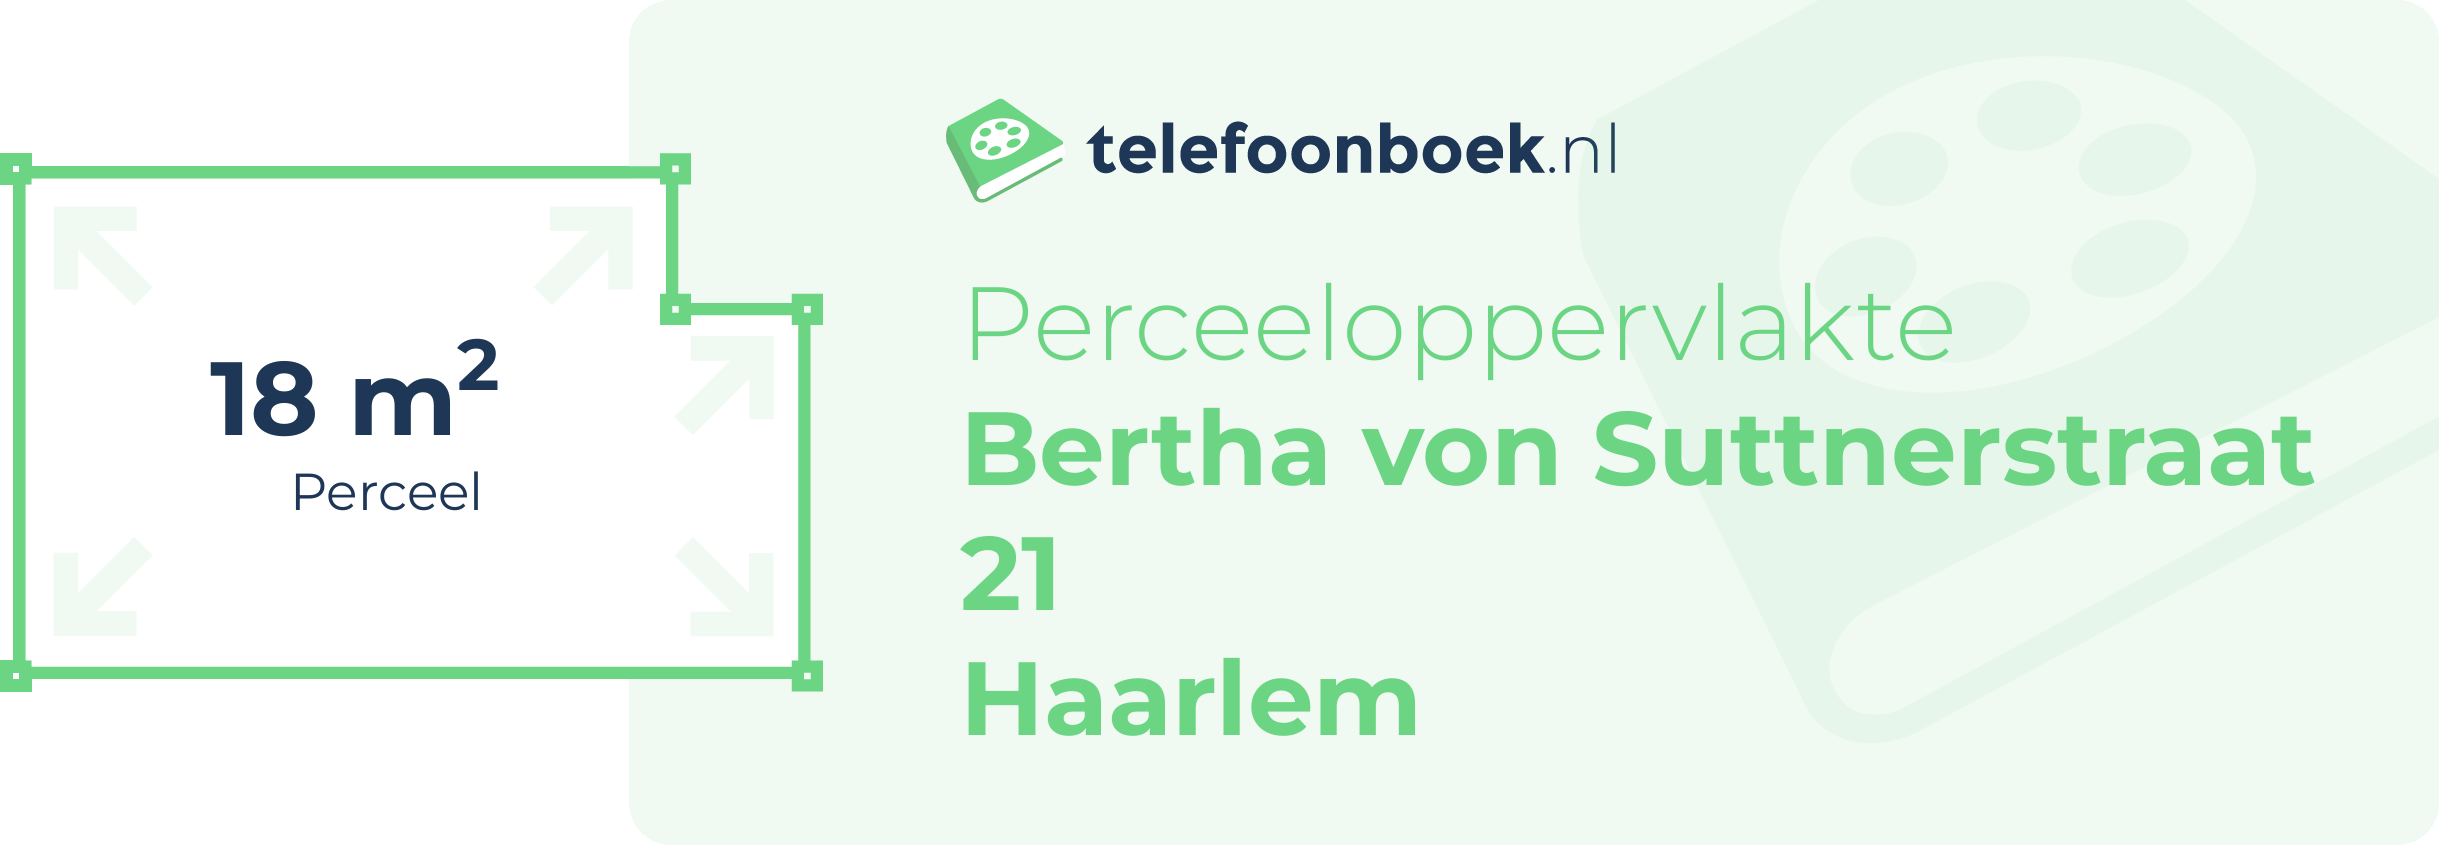 Perceeloppervlakte Bertha Von Suttnerstraat 21 Haarlem